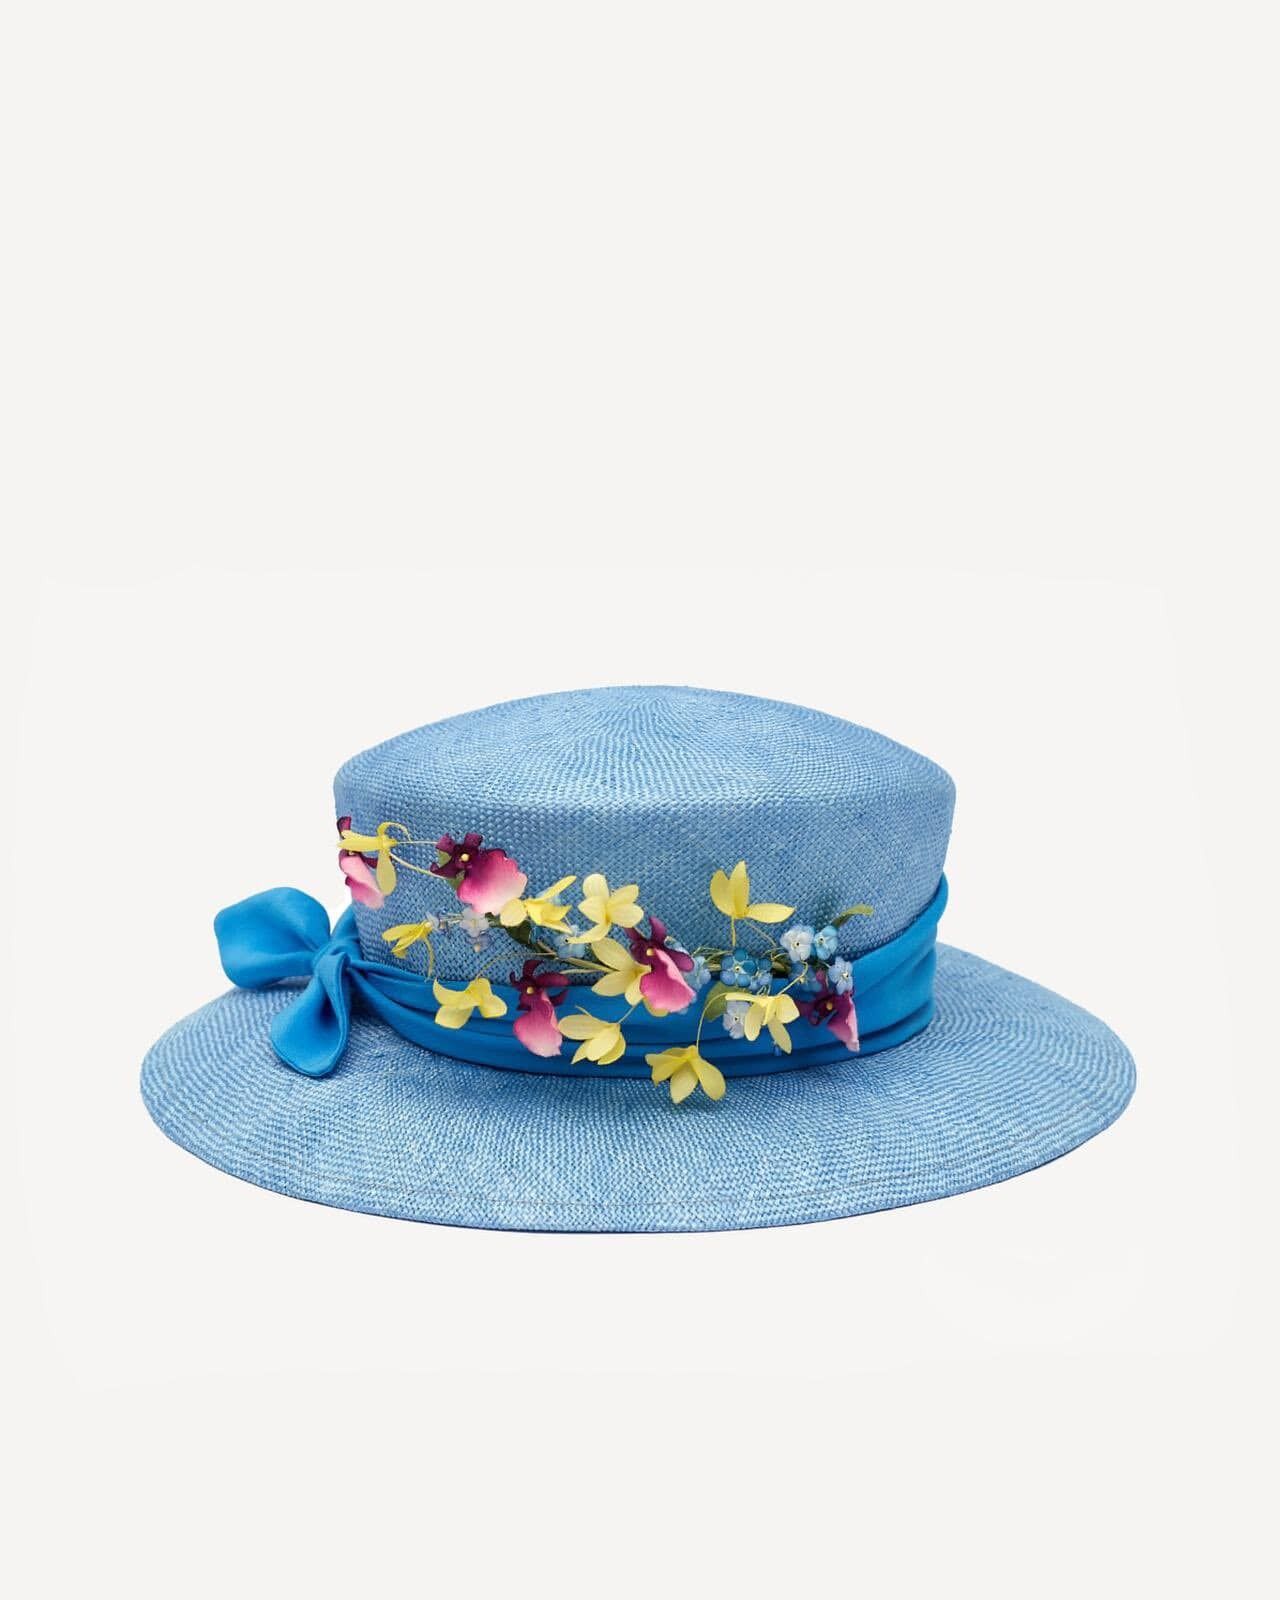 Подарок ко Дню Независимости: украинский дизайнер создал шляпу для Елизаветы II